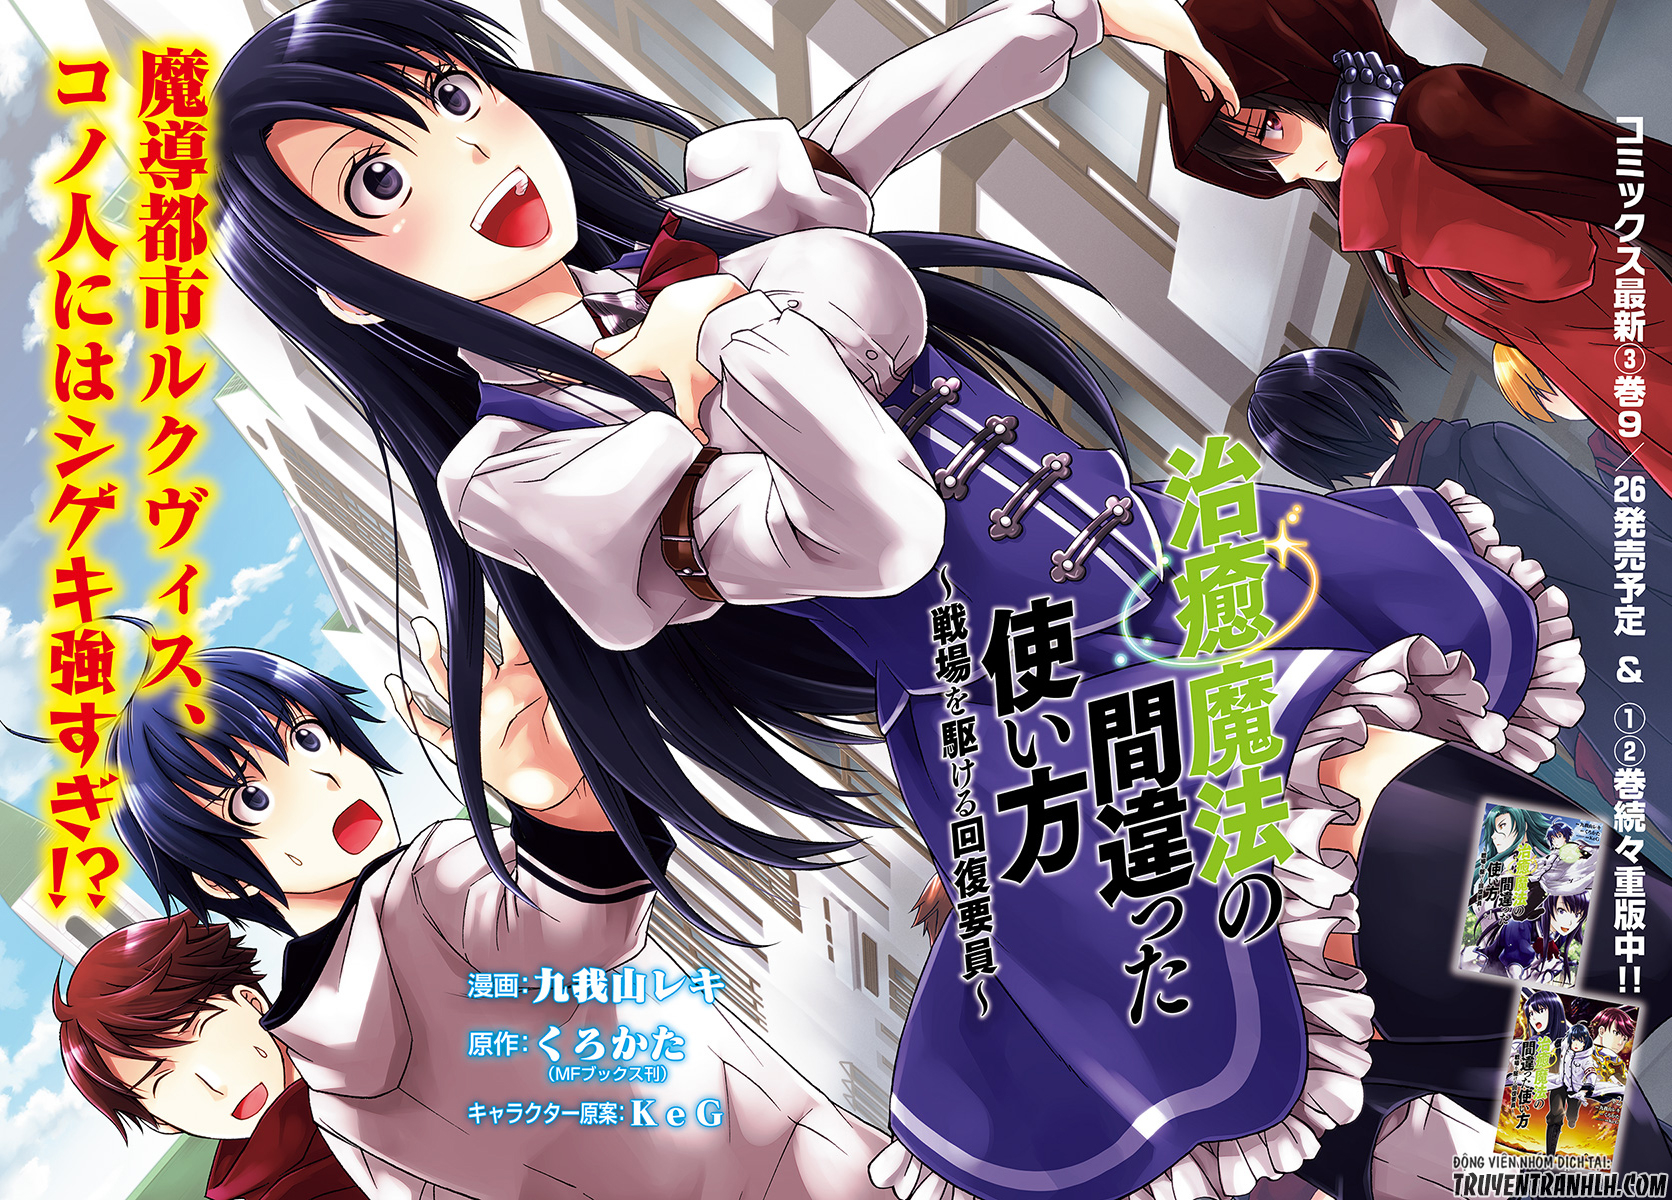 6 bộ Manga/Anime thể loại Isekai được nhiều độc giả săn đón nhất trong năm qua - Ảnh 6.